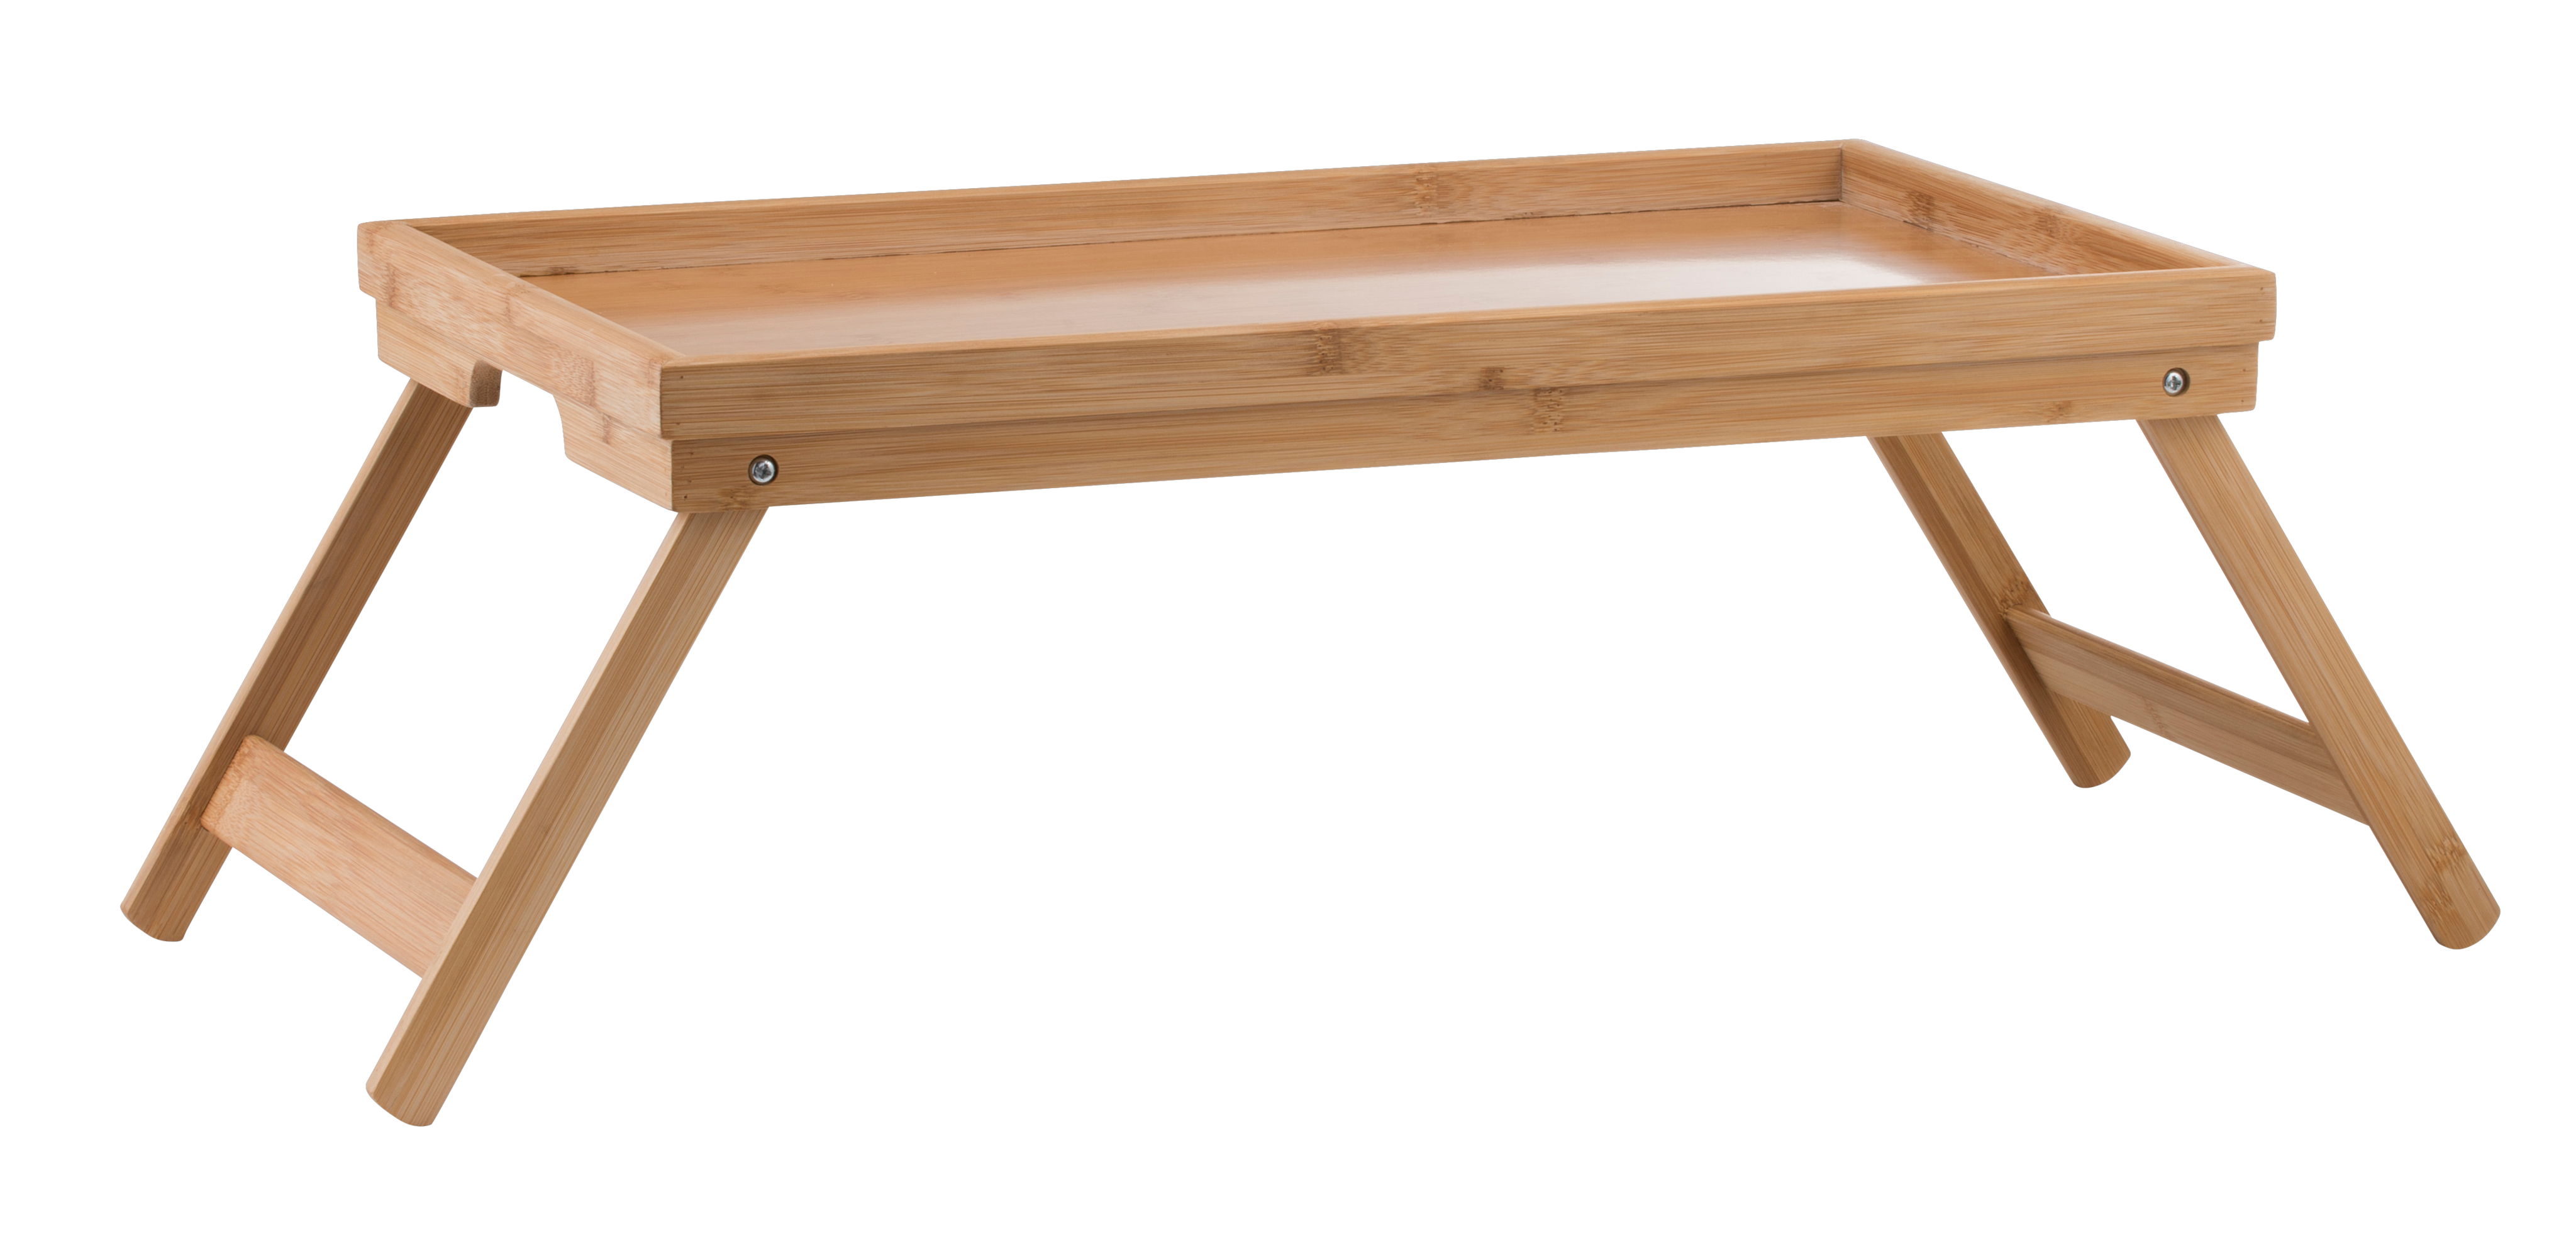 22.5 x 50 x 30 cm Ejoyous Pliable Plateau de Lit en Bambou Table de Lit et Plateau Laqué Bois avec Poignées Portable Tablette de Petit Déjeuner 